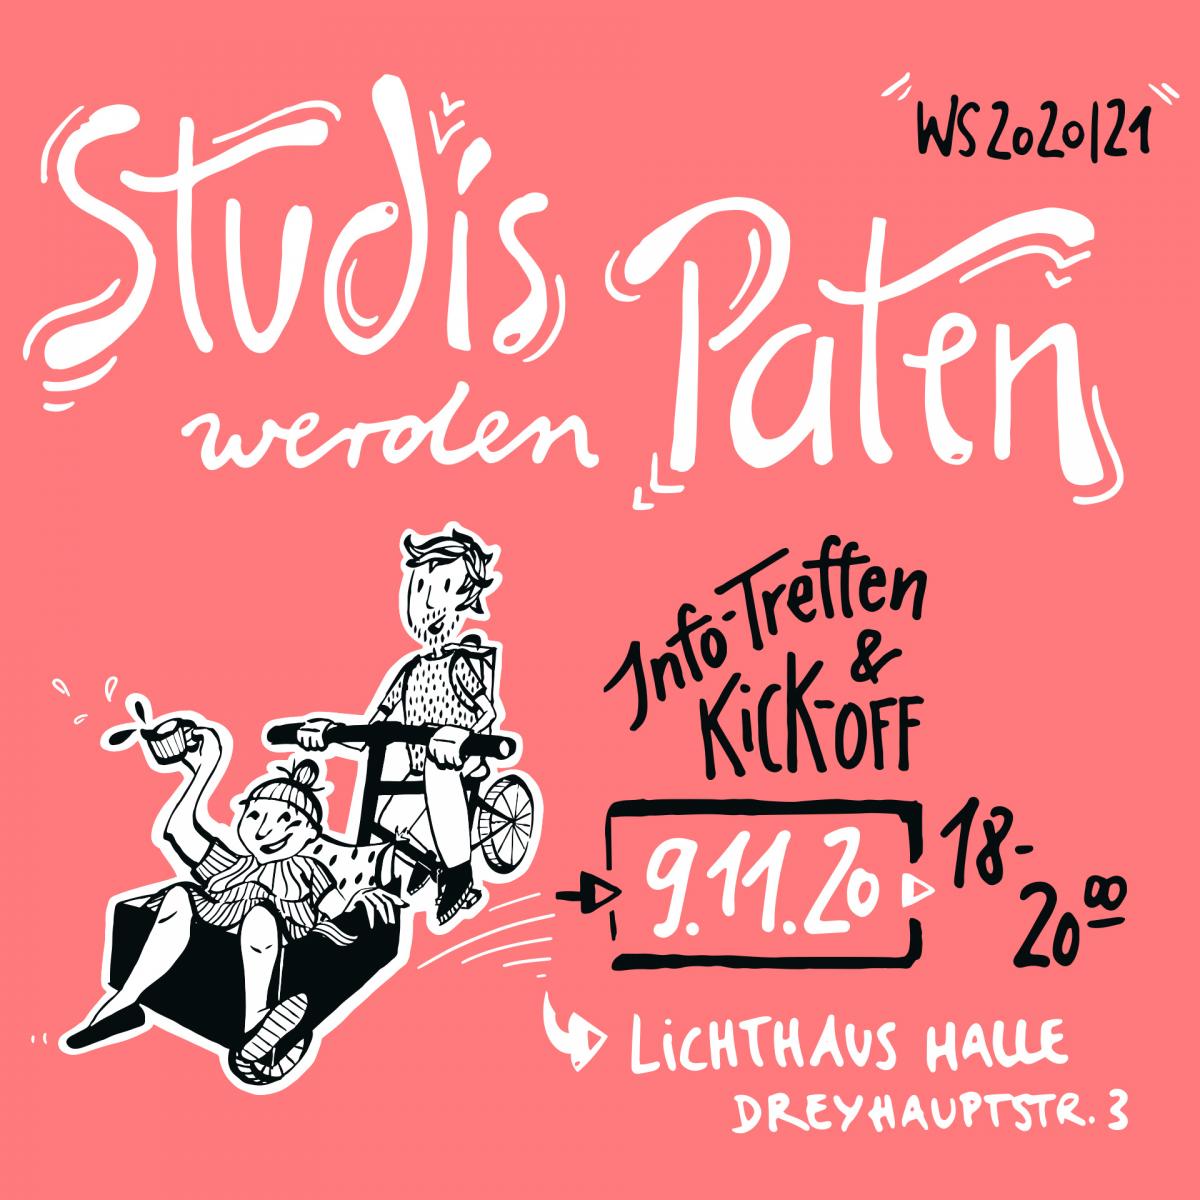 Text im Bild: Studis werden Paten, WS 2020/21, Info-Treffen&Kick-Off am 09.11. 18 - 20 Uhr, Lichthaus Halle, Dreyhauptstraße 3